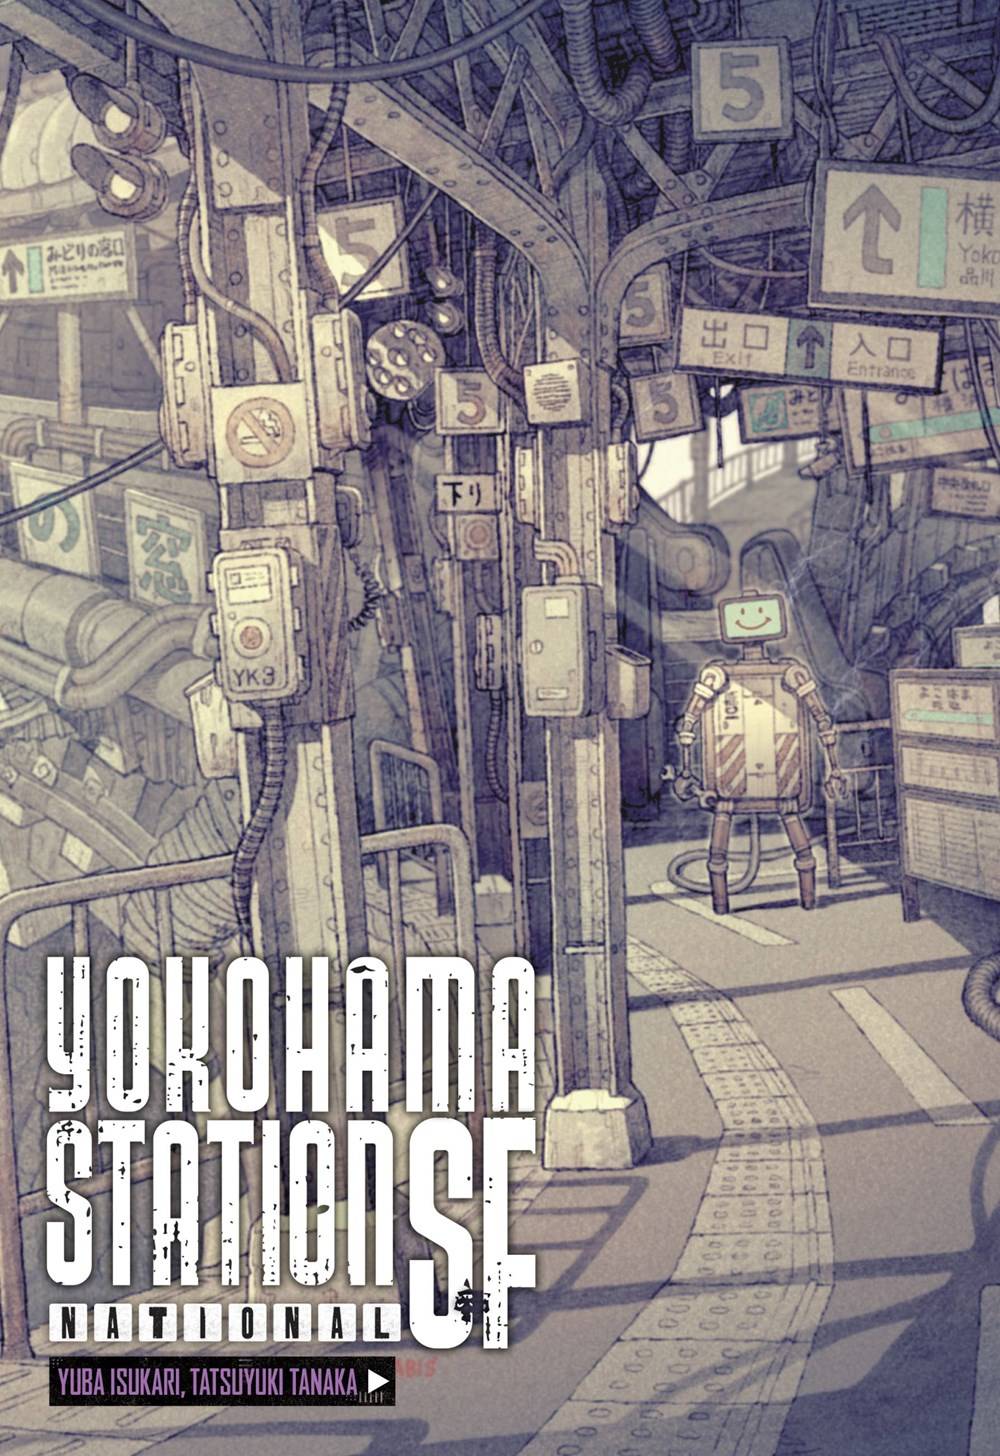 YOKOHAMA STATION SF NATIONAL HC